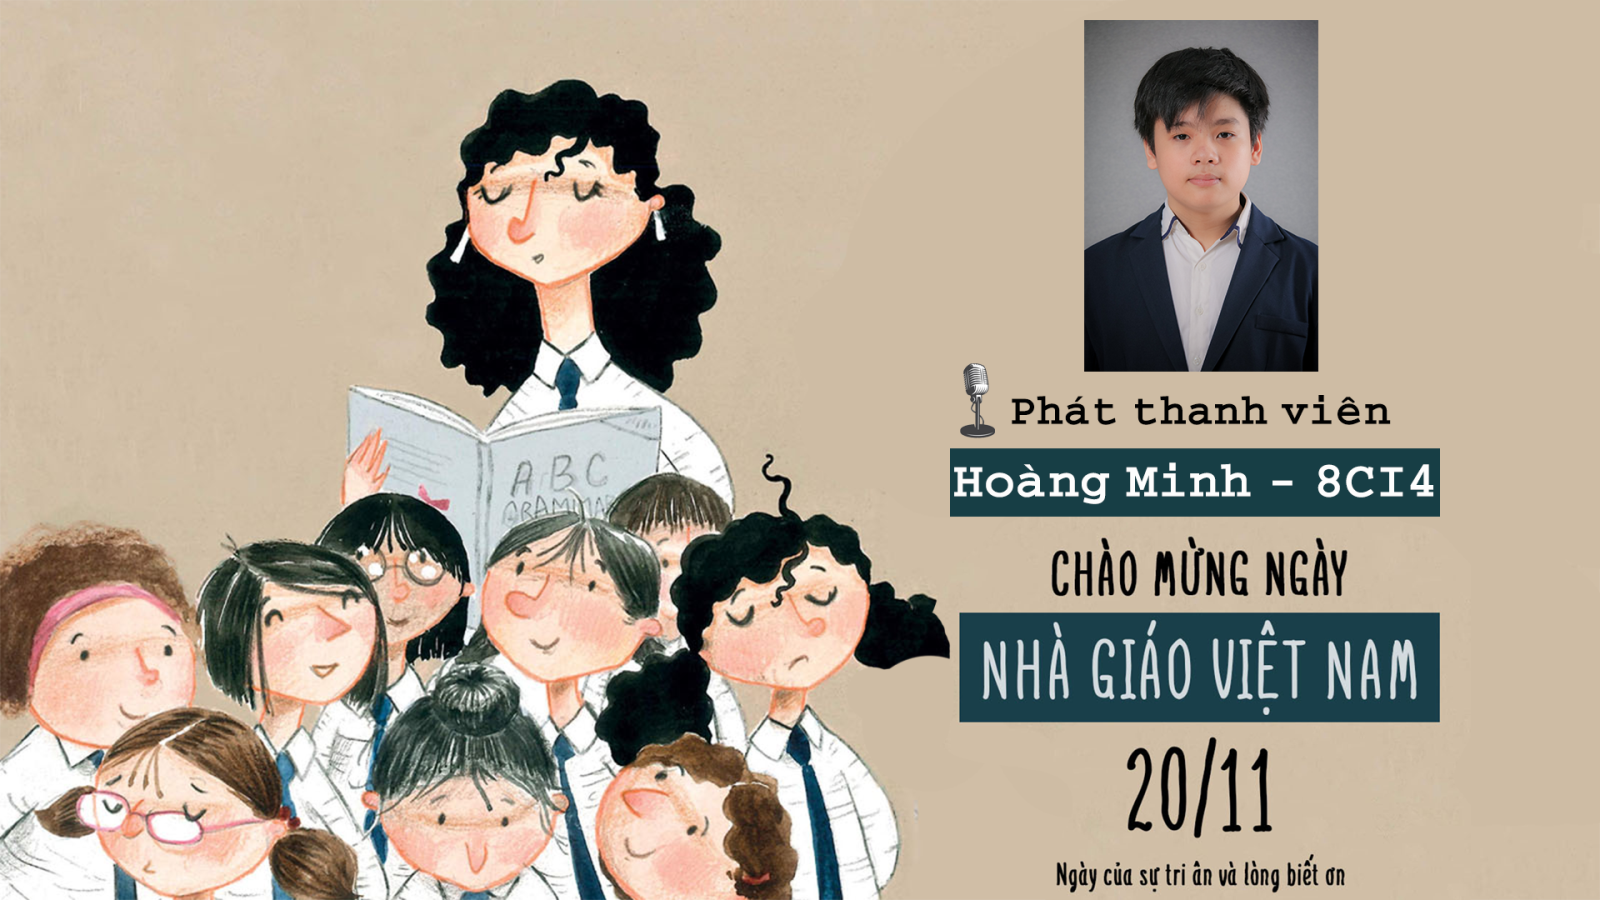 Phát thanh Măng non: Ngày Nhà giáo Việt Nam 20/11 (III)